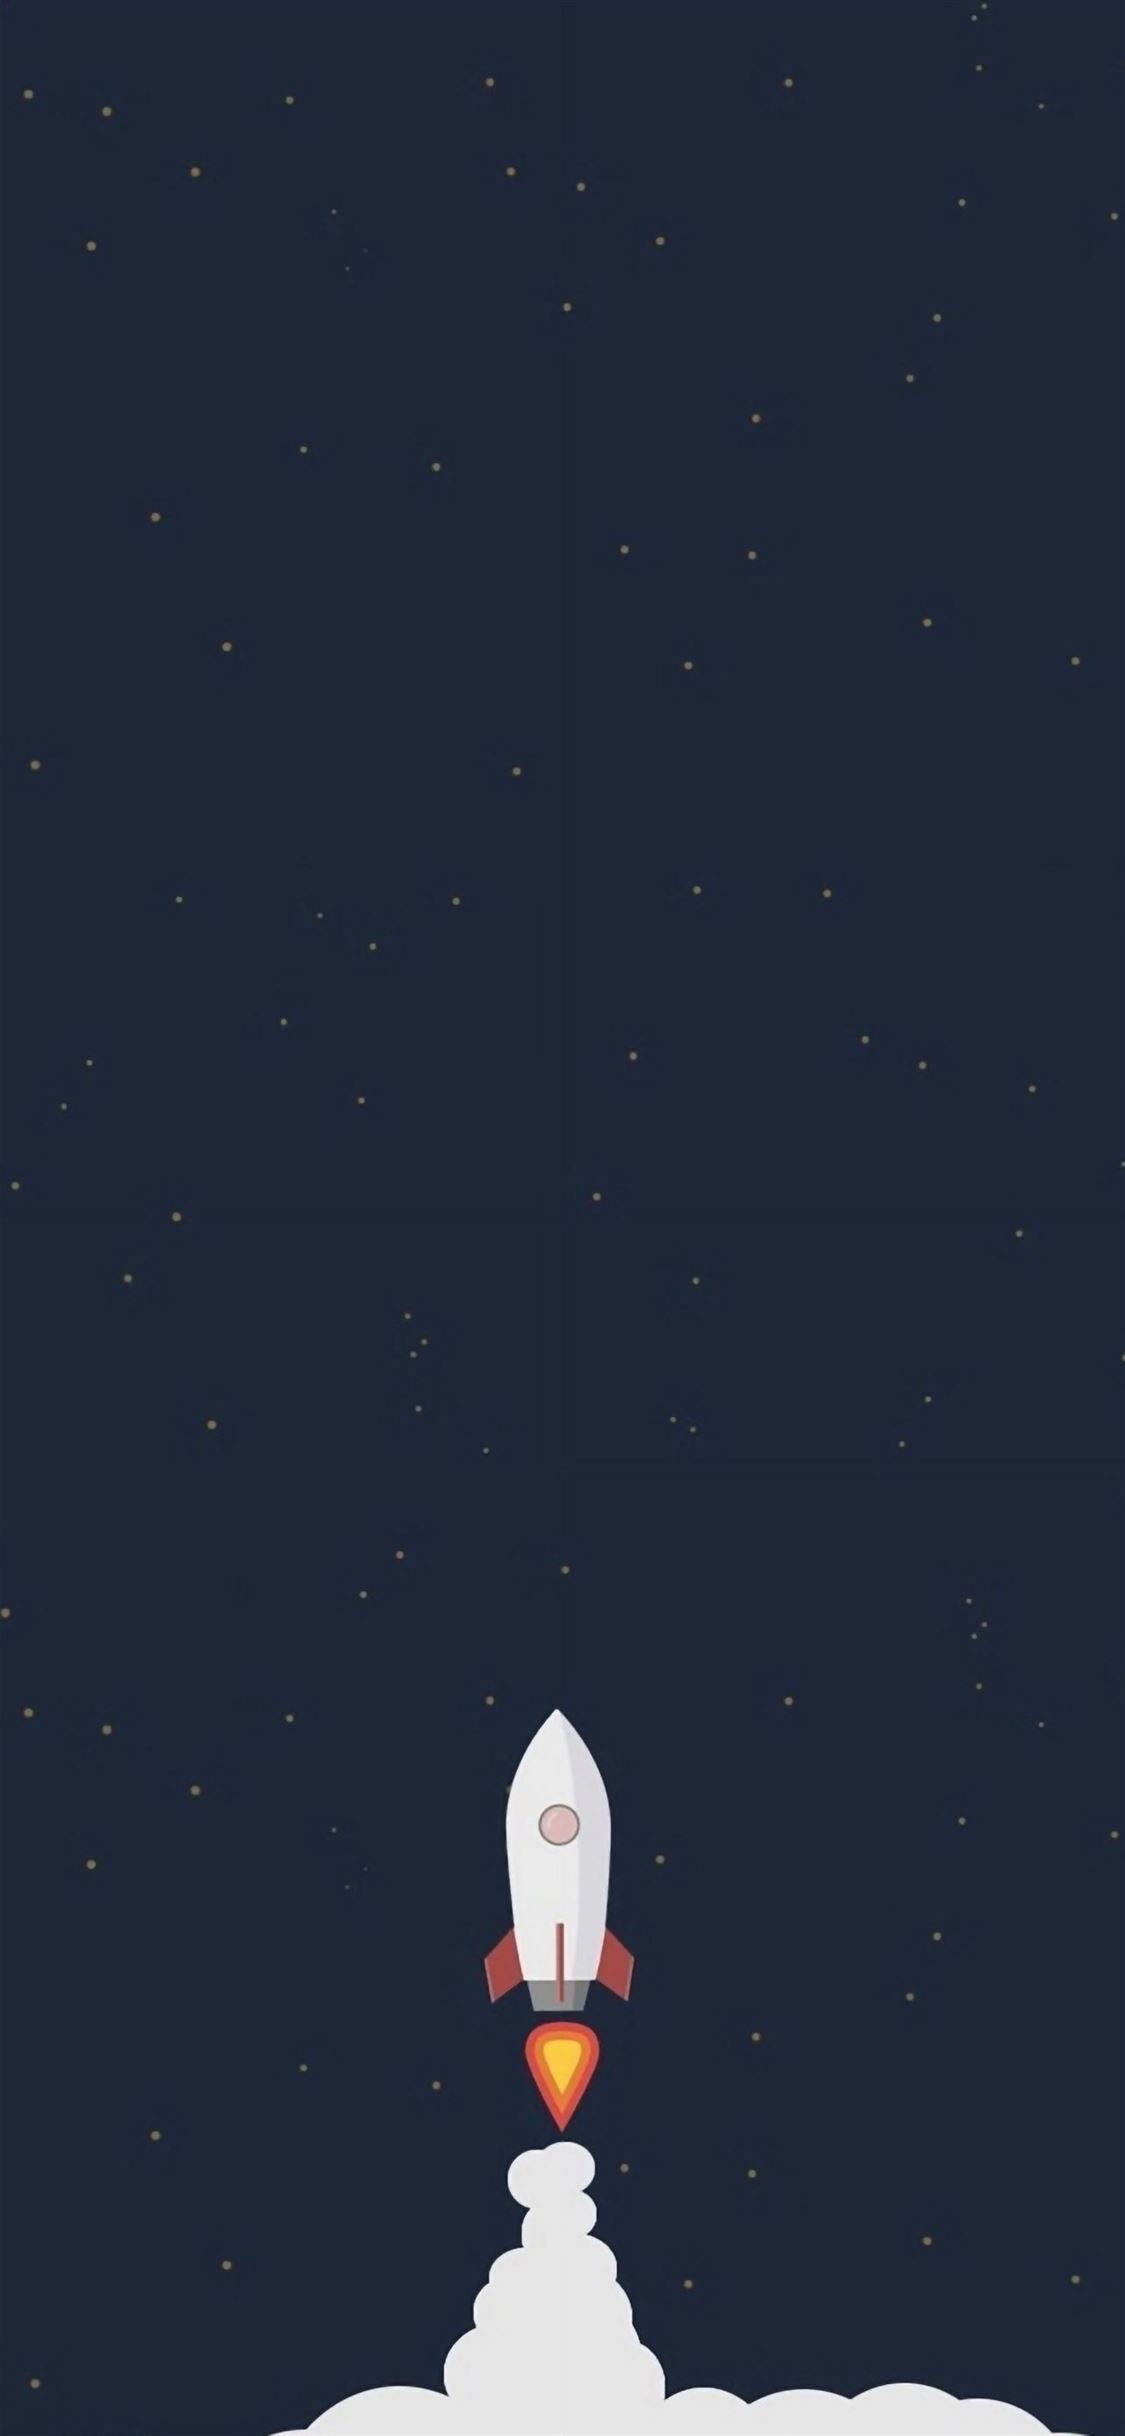 Rocket Liftoff Illustration iPhone wallpaper 